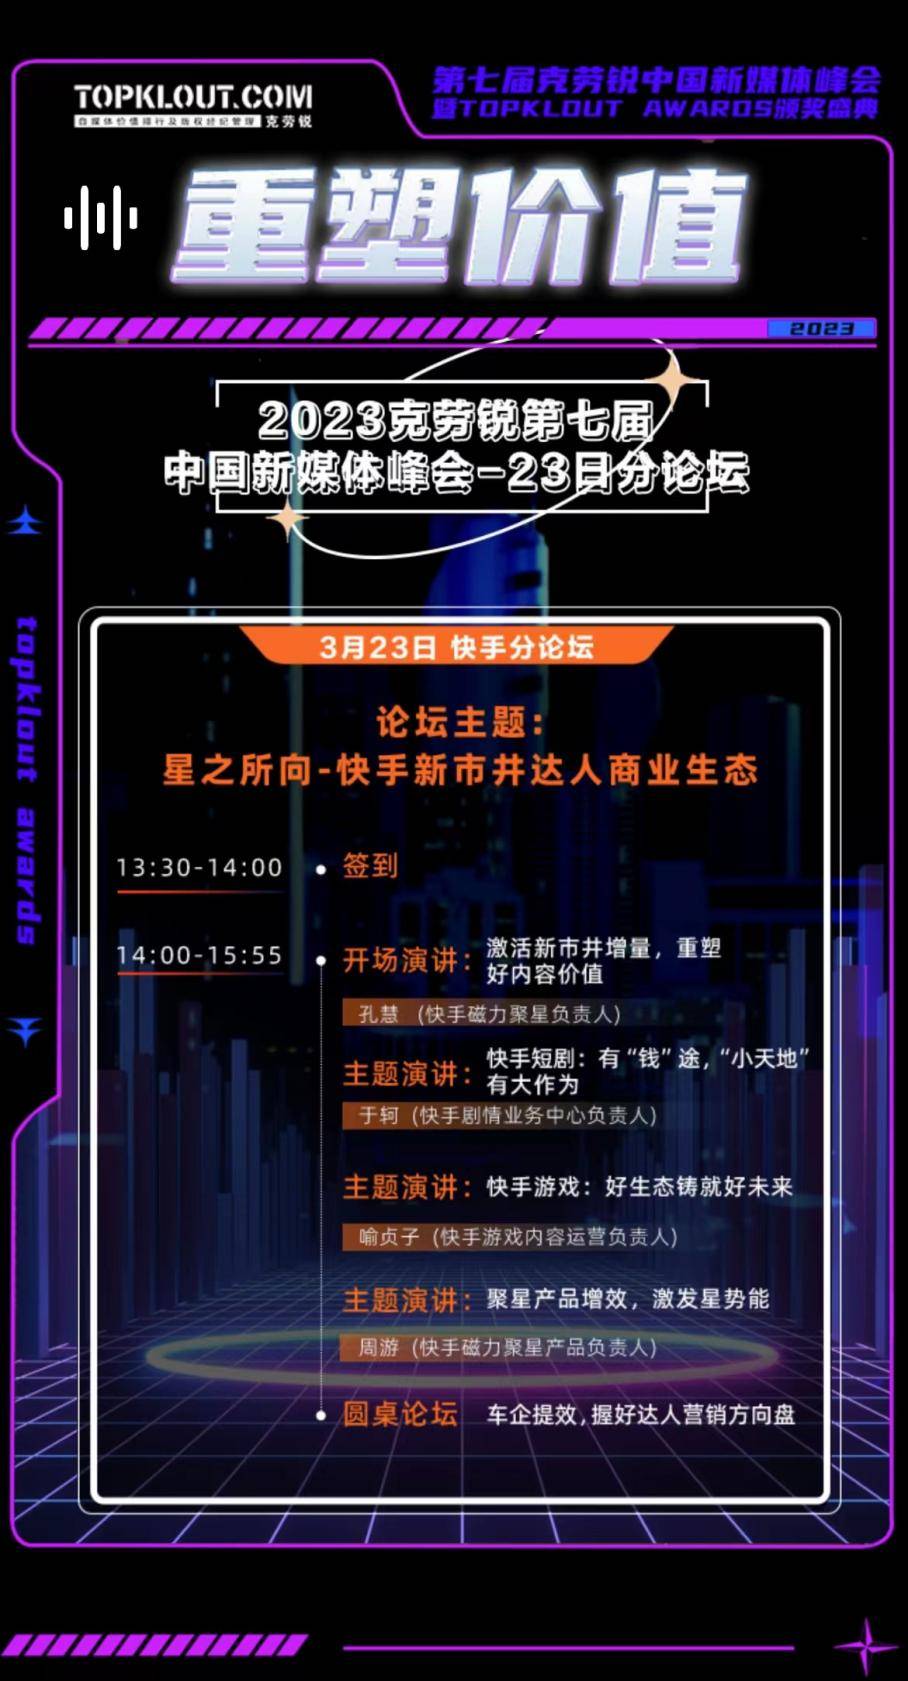 克劳锐第七届中国新媒体峰会分论坛即将开启！ 